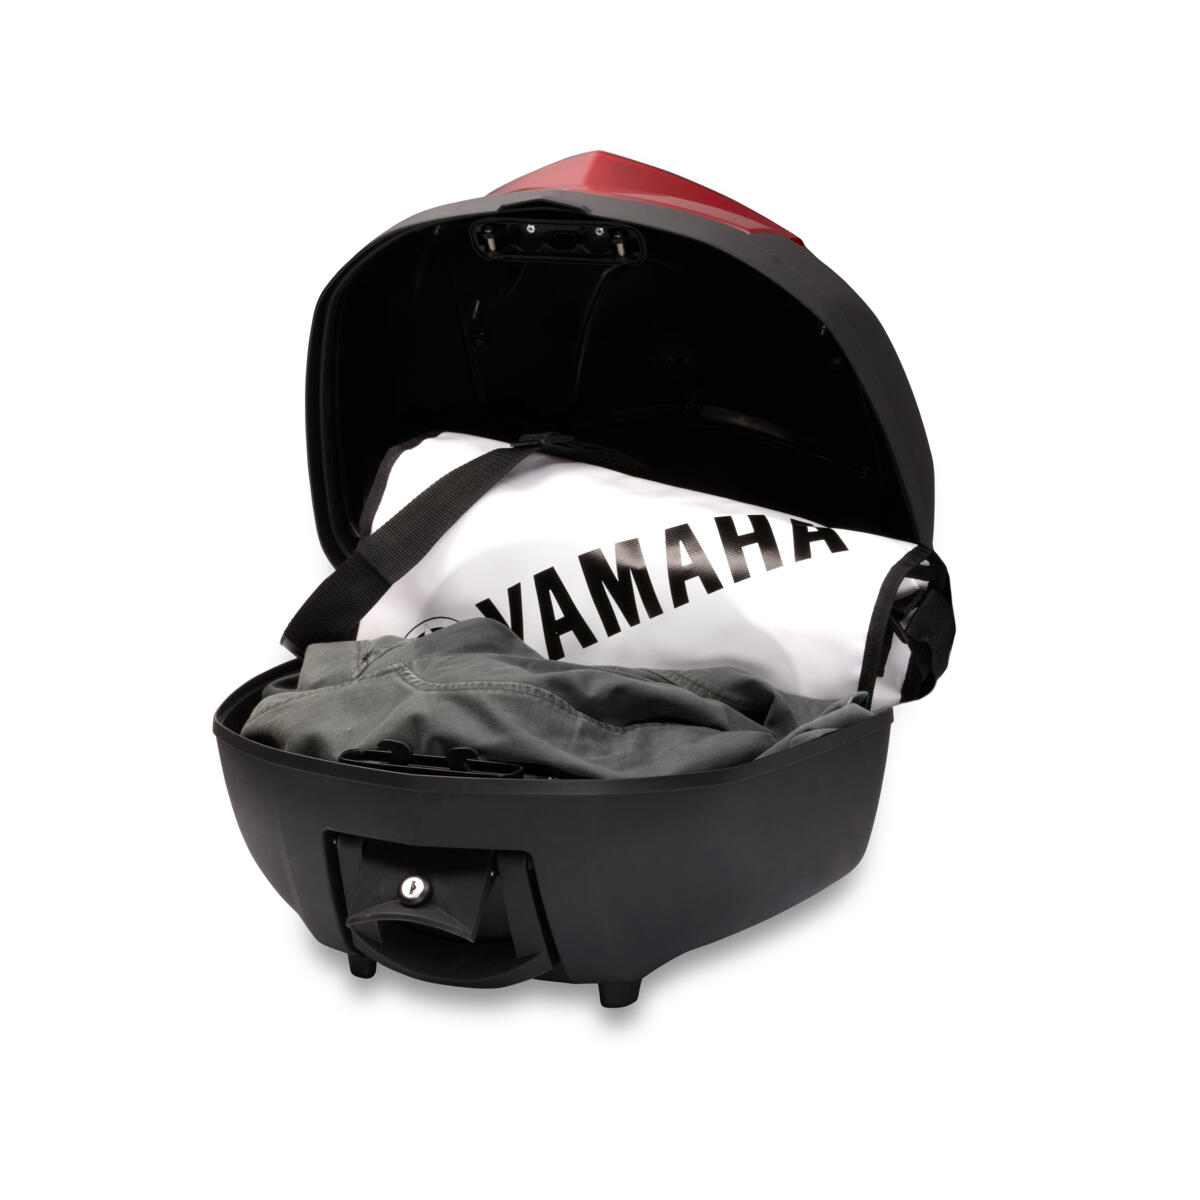 Υψηλής ποιότητας βαλίτσα για επιπλέον χώρο αποσκευών/αποθηκευτικό χώρο στη Yamaha σας.